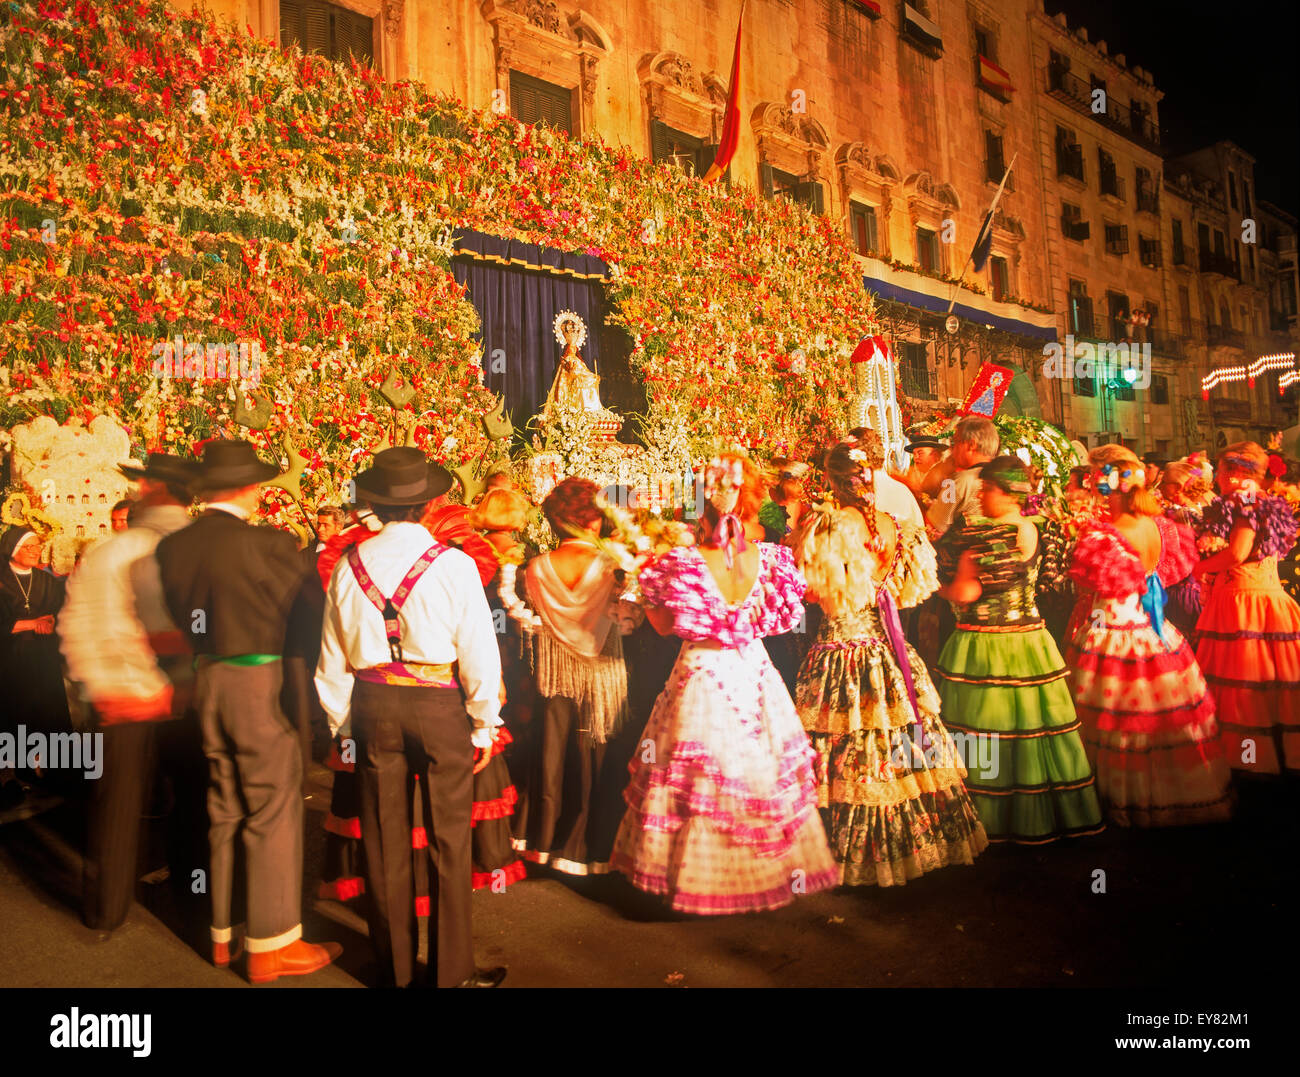 The Annual San Juan Festival at night in June on Plaza del Ayuntamiento  (City Square) in Alicante, Spain Stock Photo - Alamy